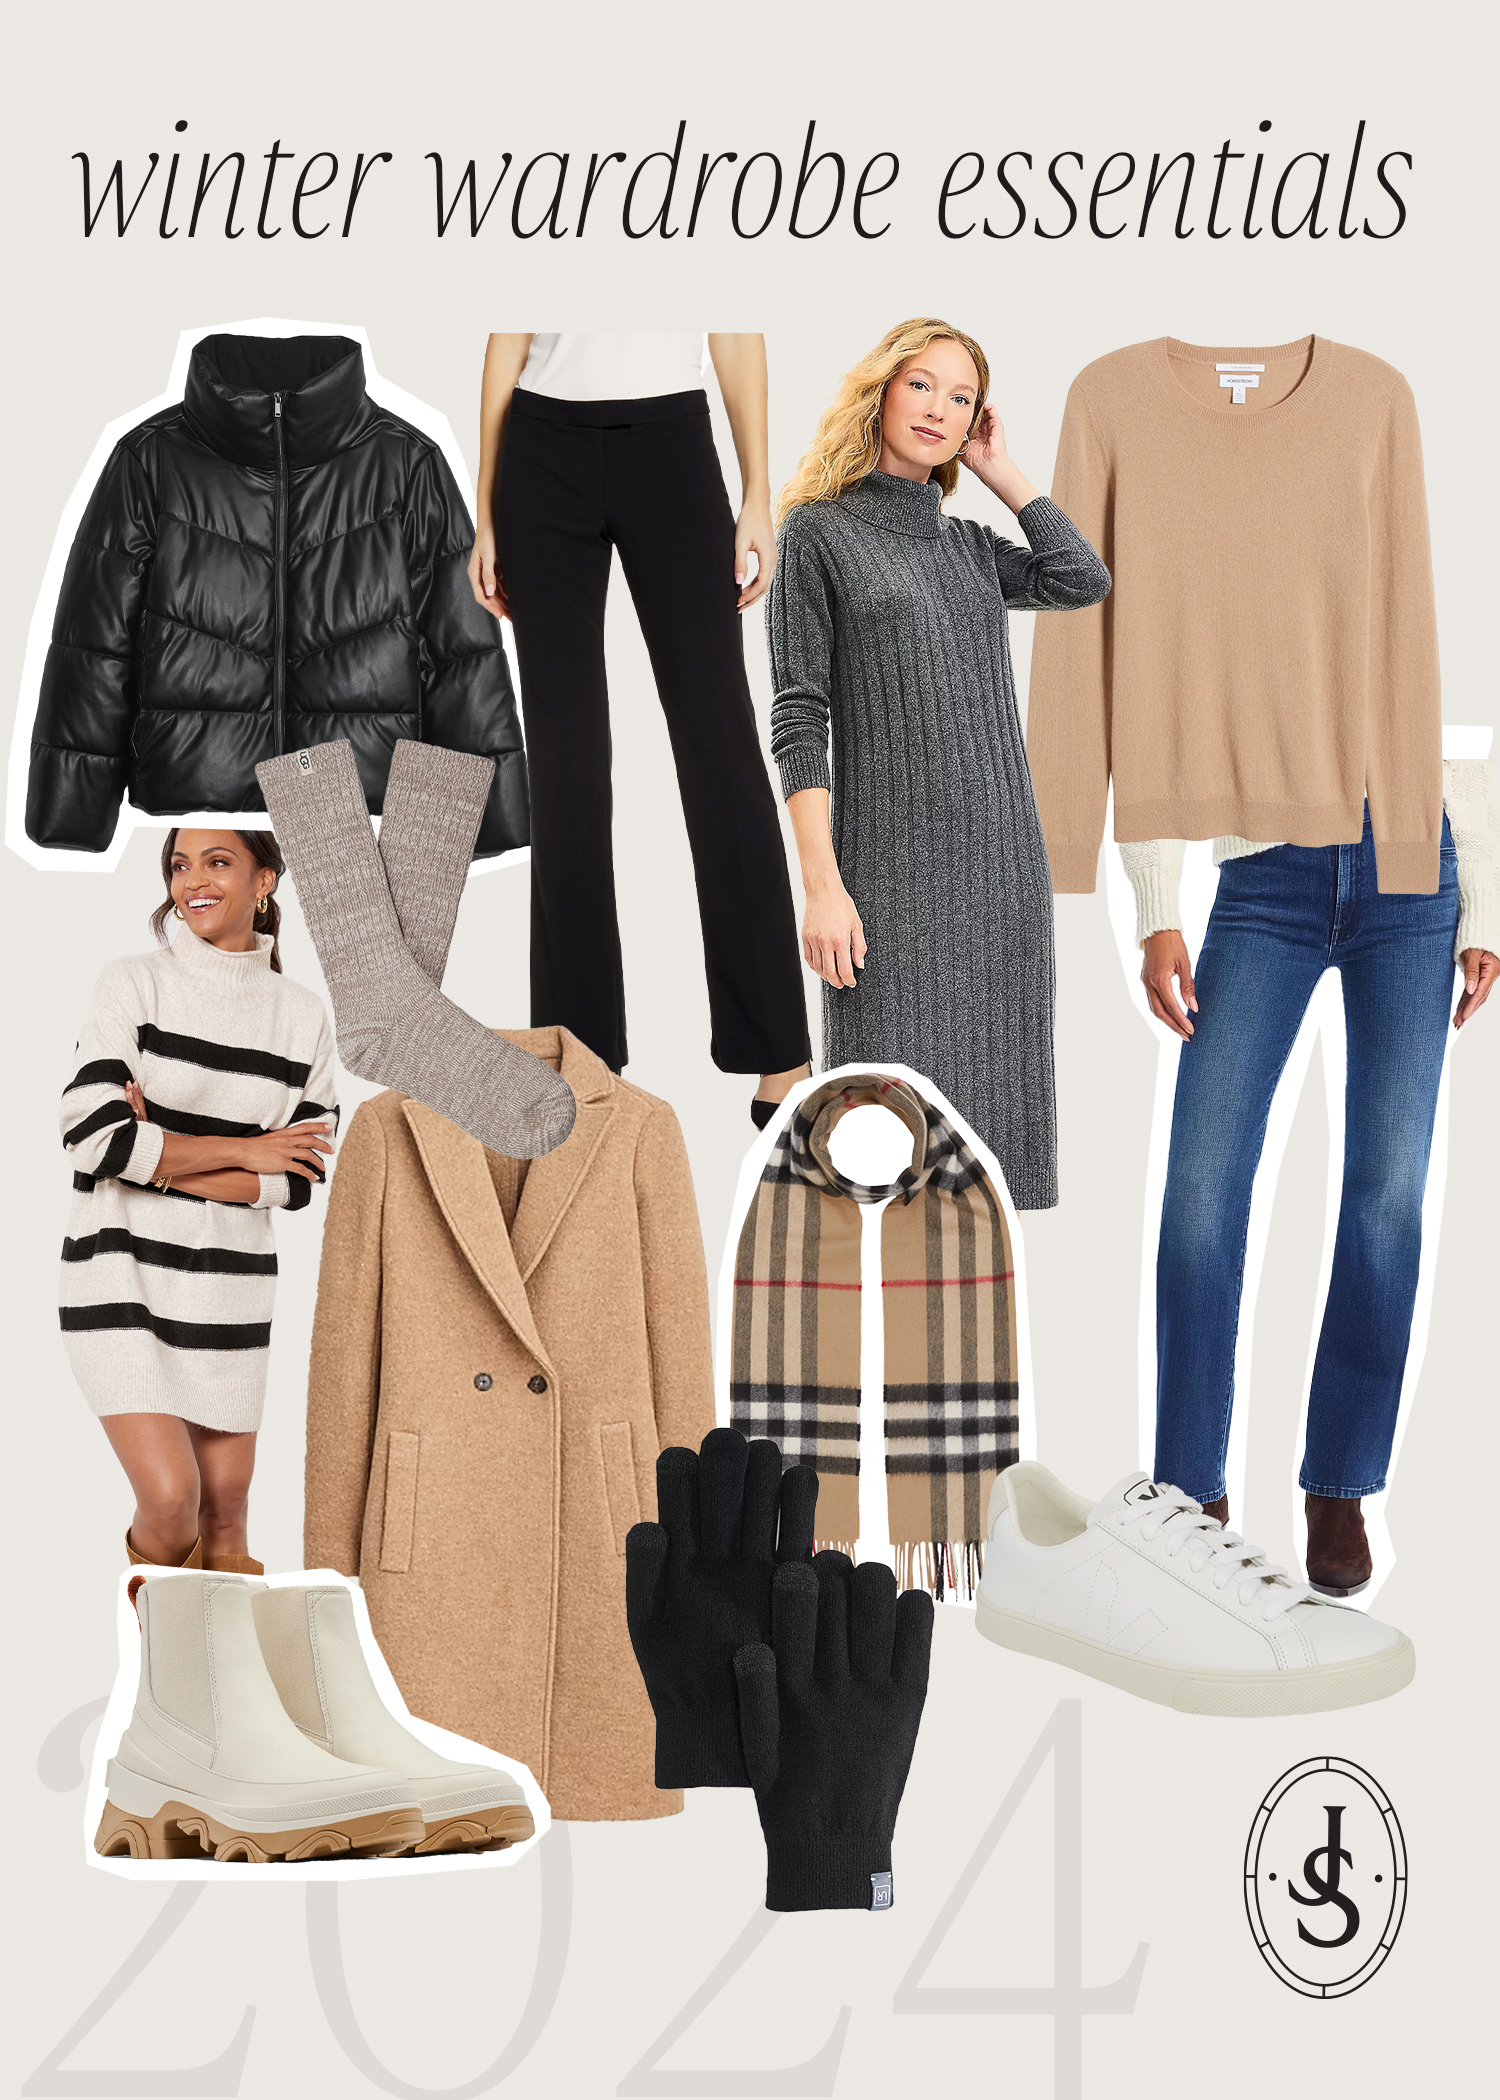 Winter Wardrobe Essentials, List of winter fashion necessities